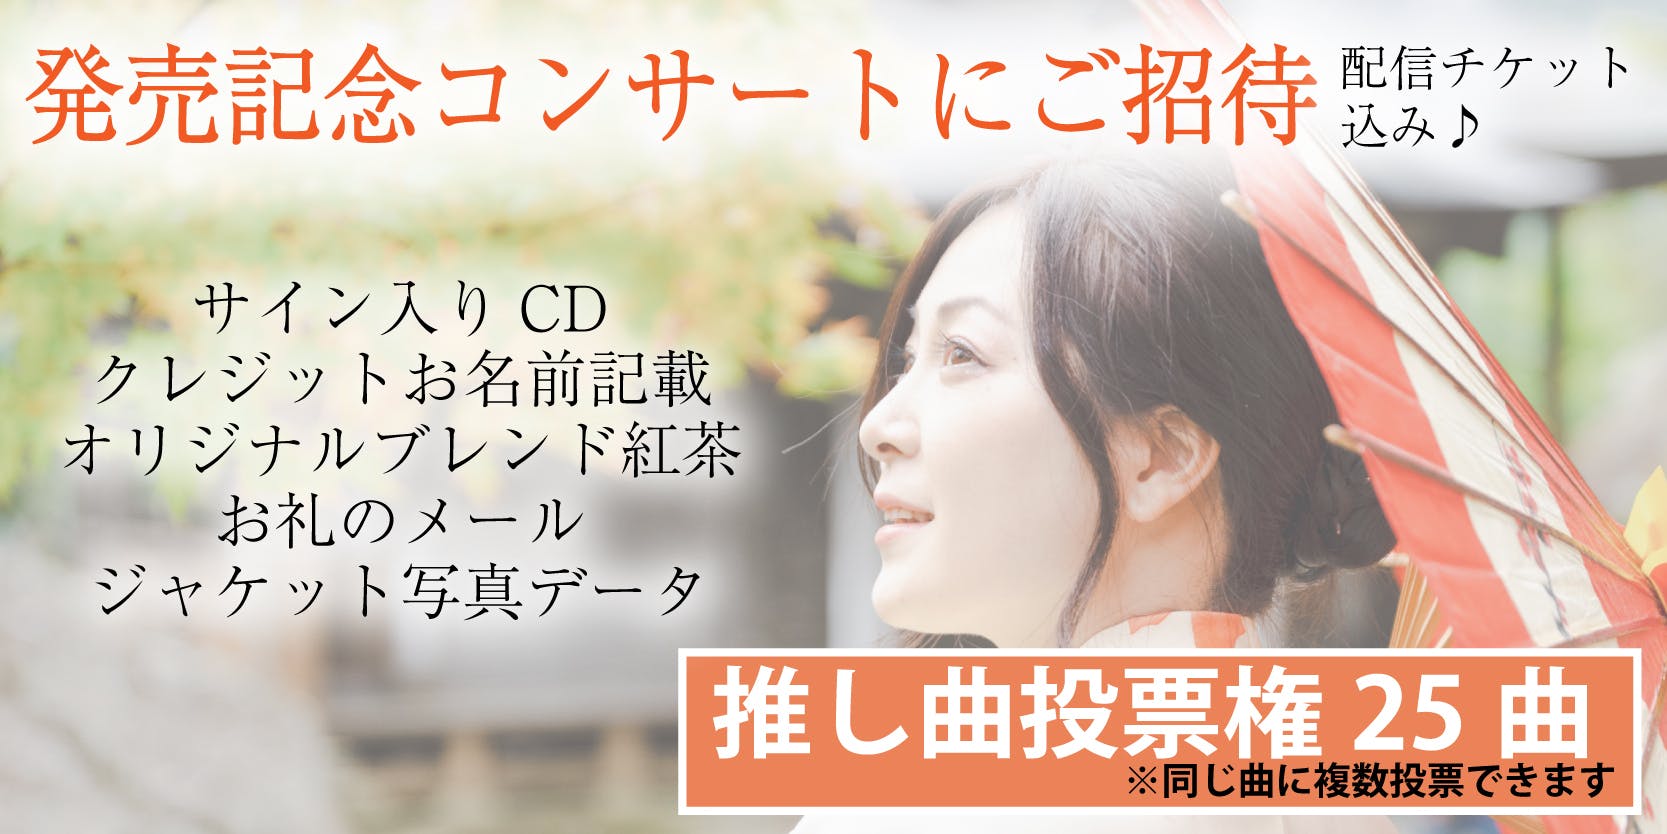 あなたと選び、未来に歌い継ぐ。新しい日本のうたCD 【#YOURSONG】 - CAMPFIRE (キャンプファイヤー)